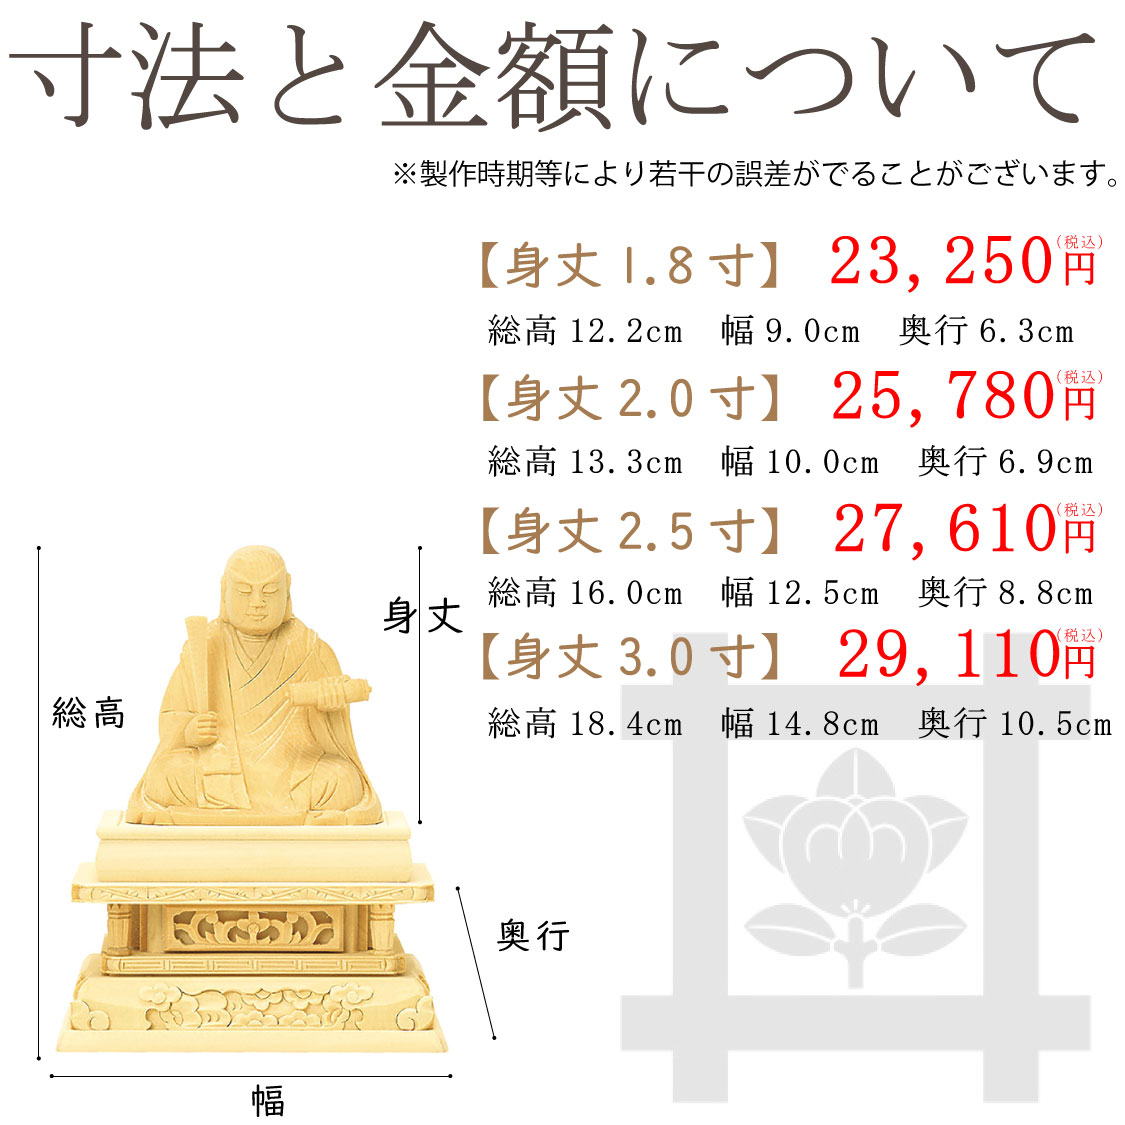 【日蓮宗】日蓮聖人像（総白木）のサイズと価格